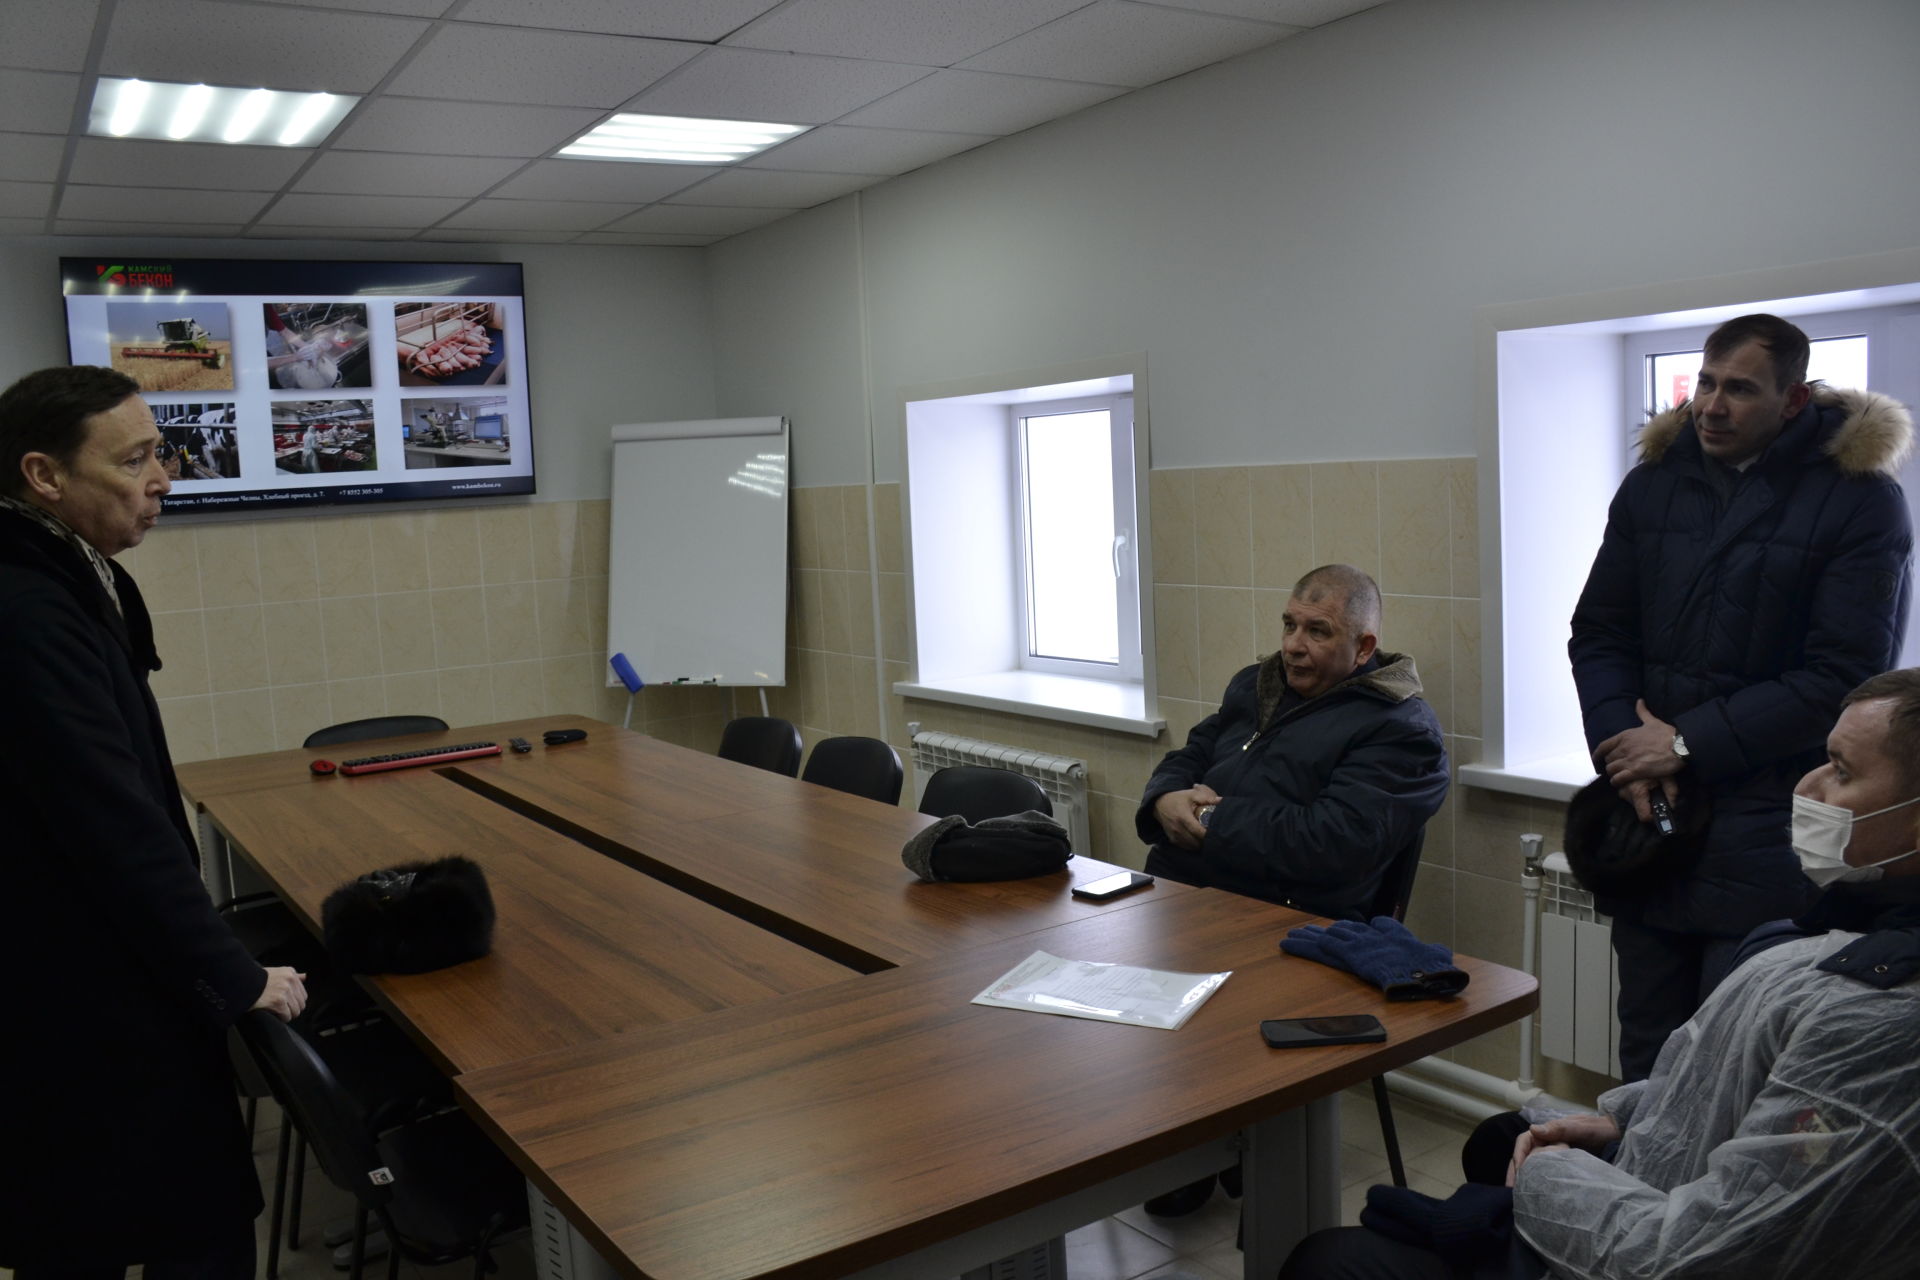 Министр сельского хозяйства Татарстана Марат Зяббаров посетил модернизированную ферму в Балтаево